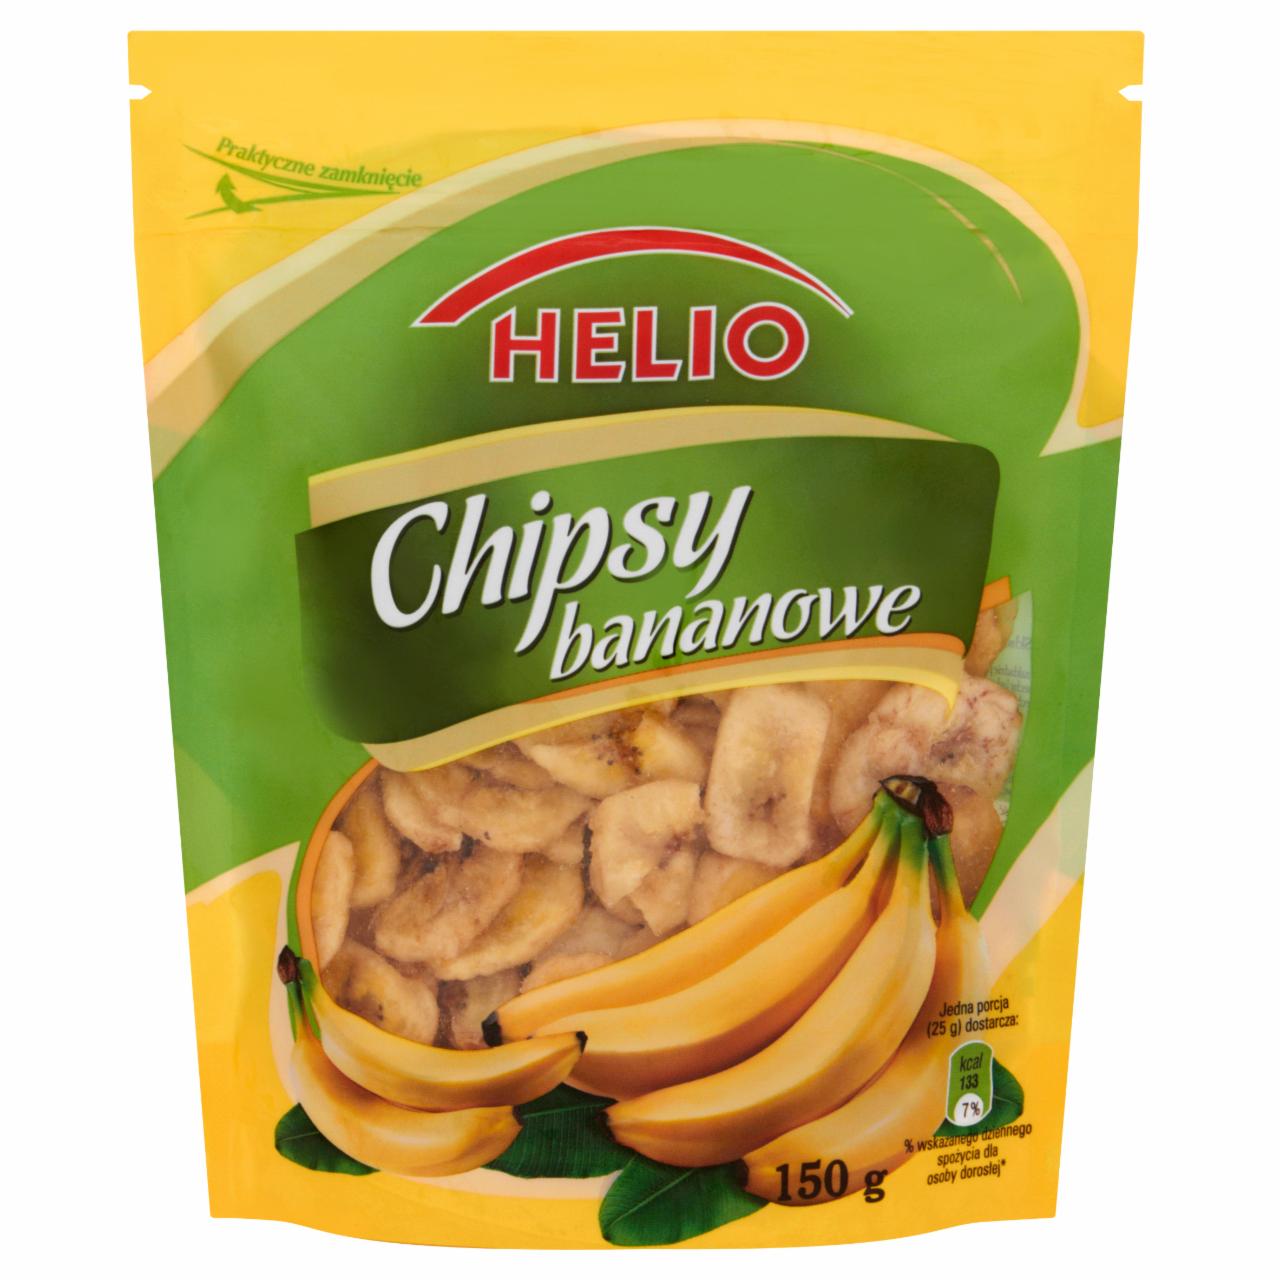 Zdjęcia - Helio Chipsy bananowe 150 g